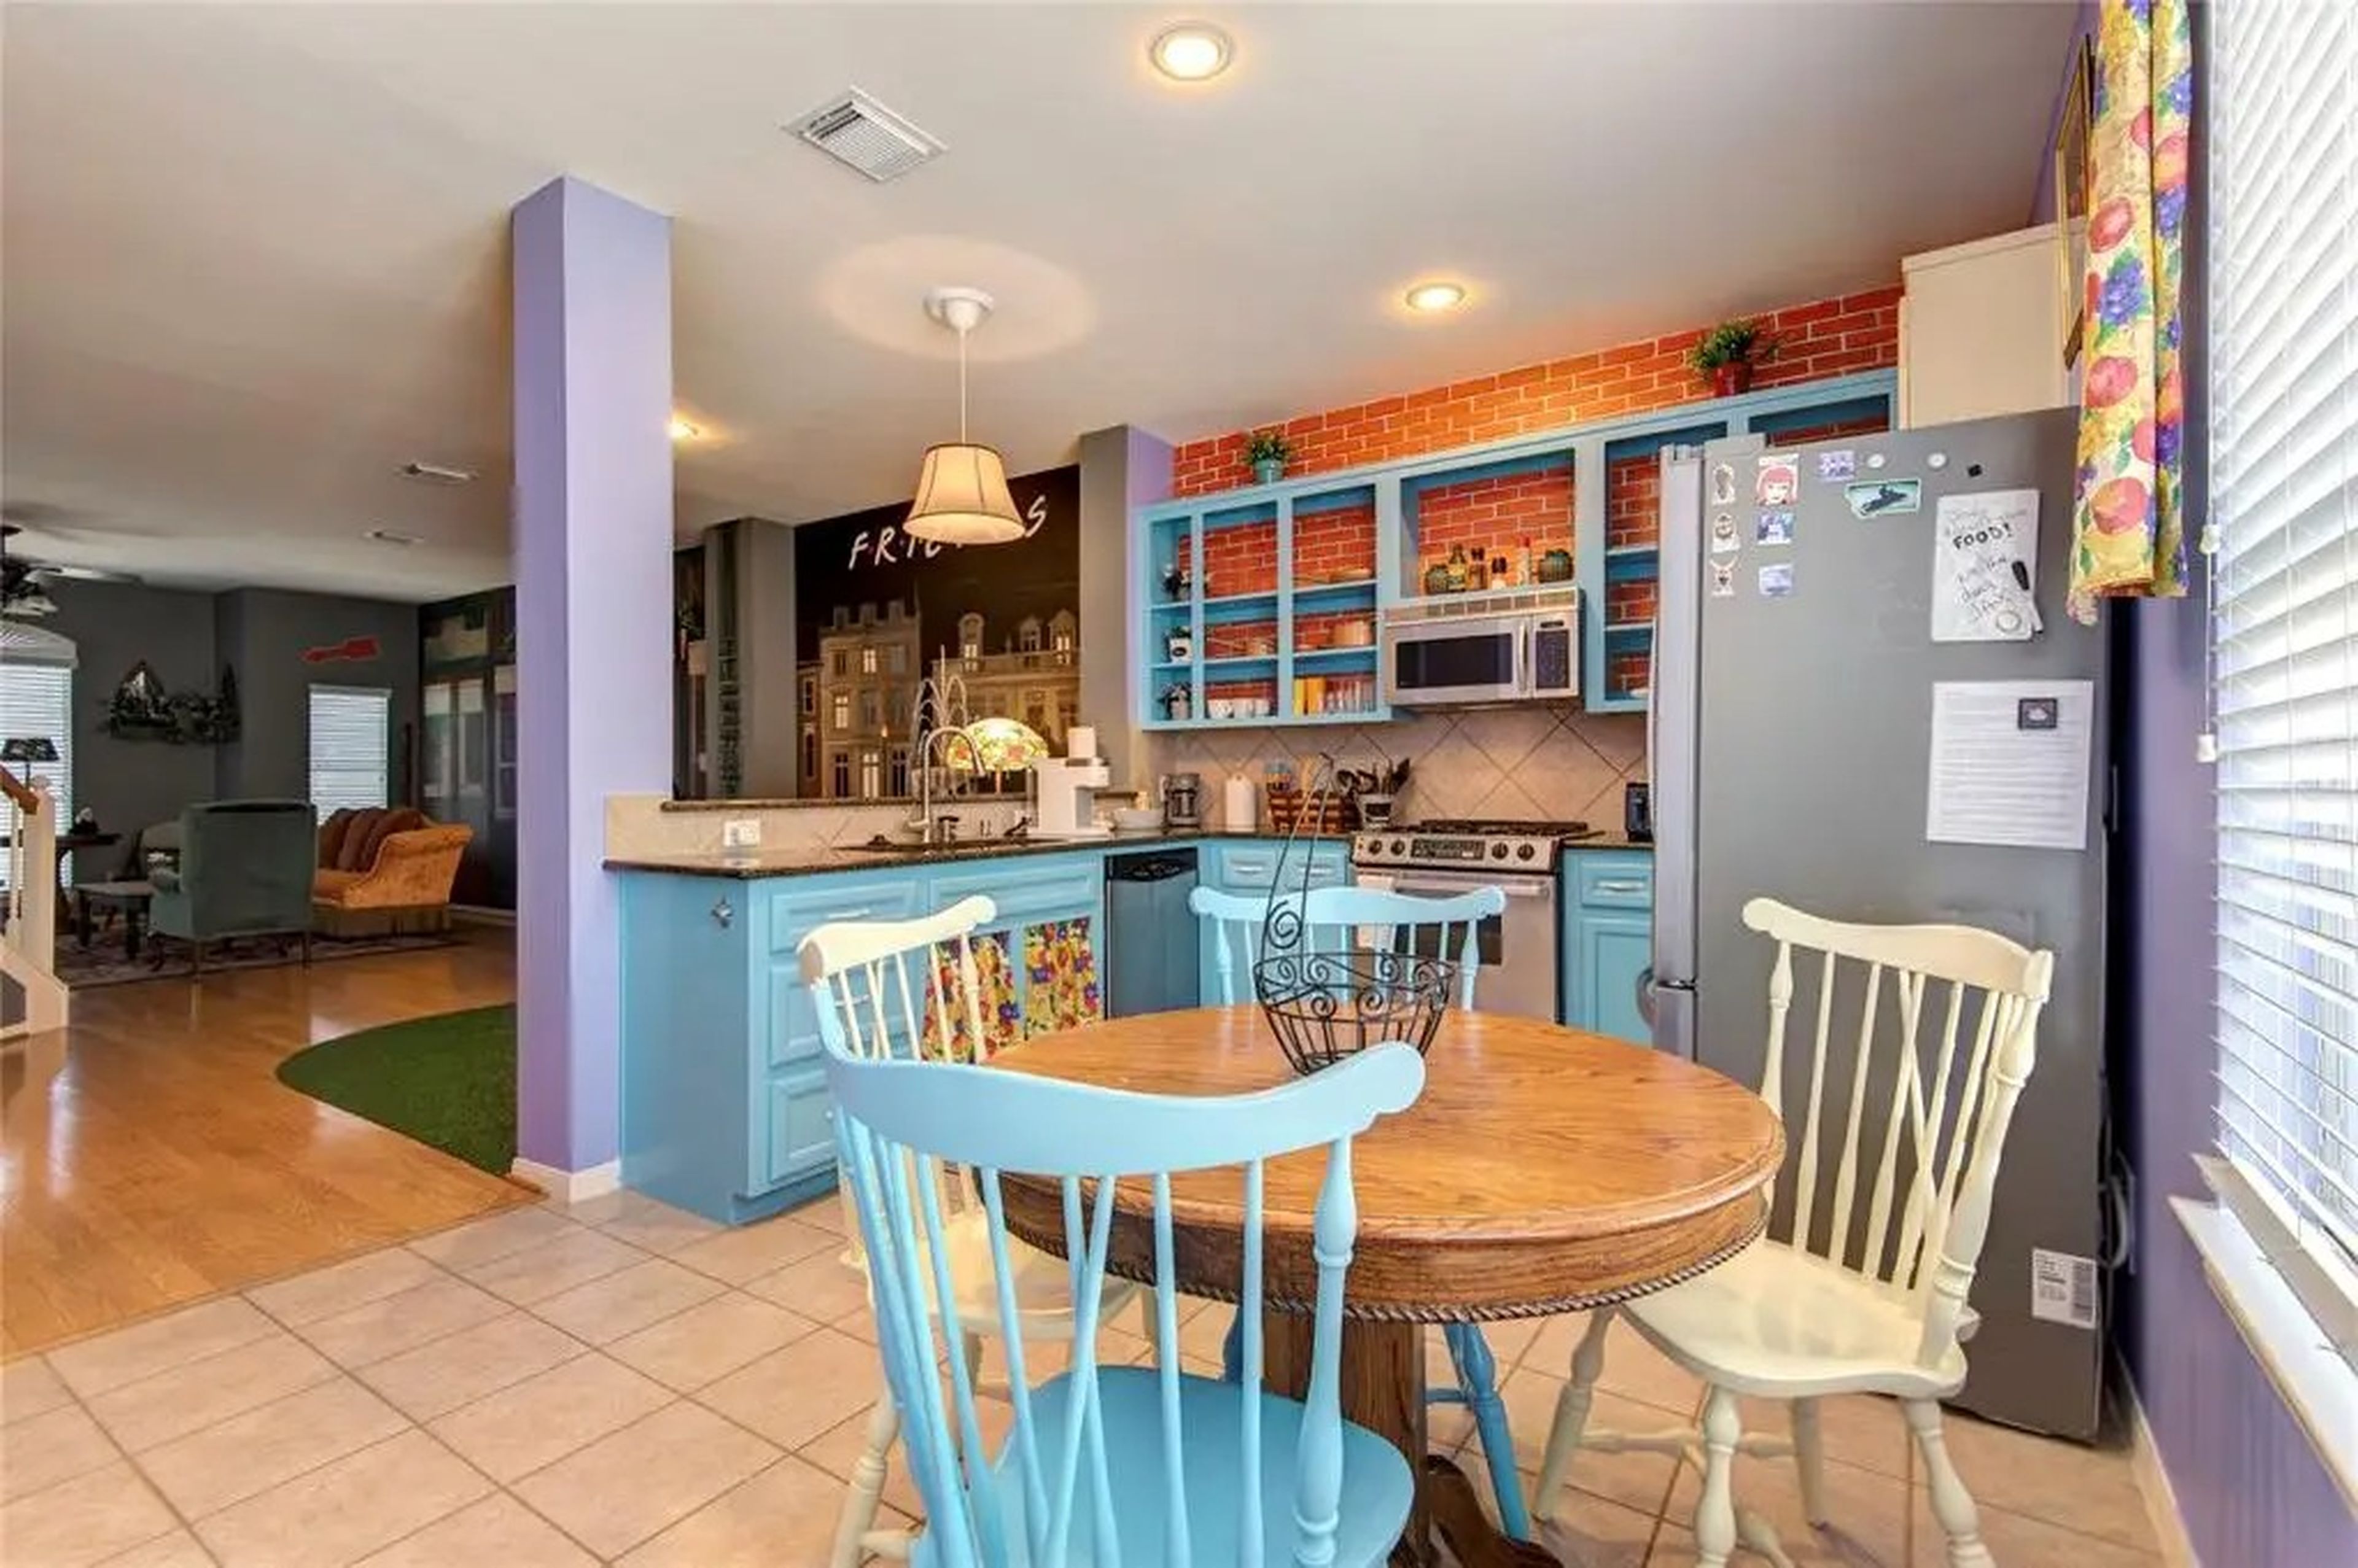 Hay una clásica mesa de desayuno, sillas de distintos colores y paredes moradas, igual que en el apartamento de Mónica.